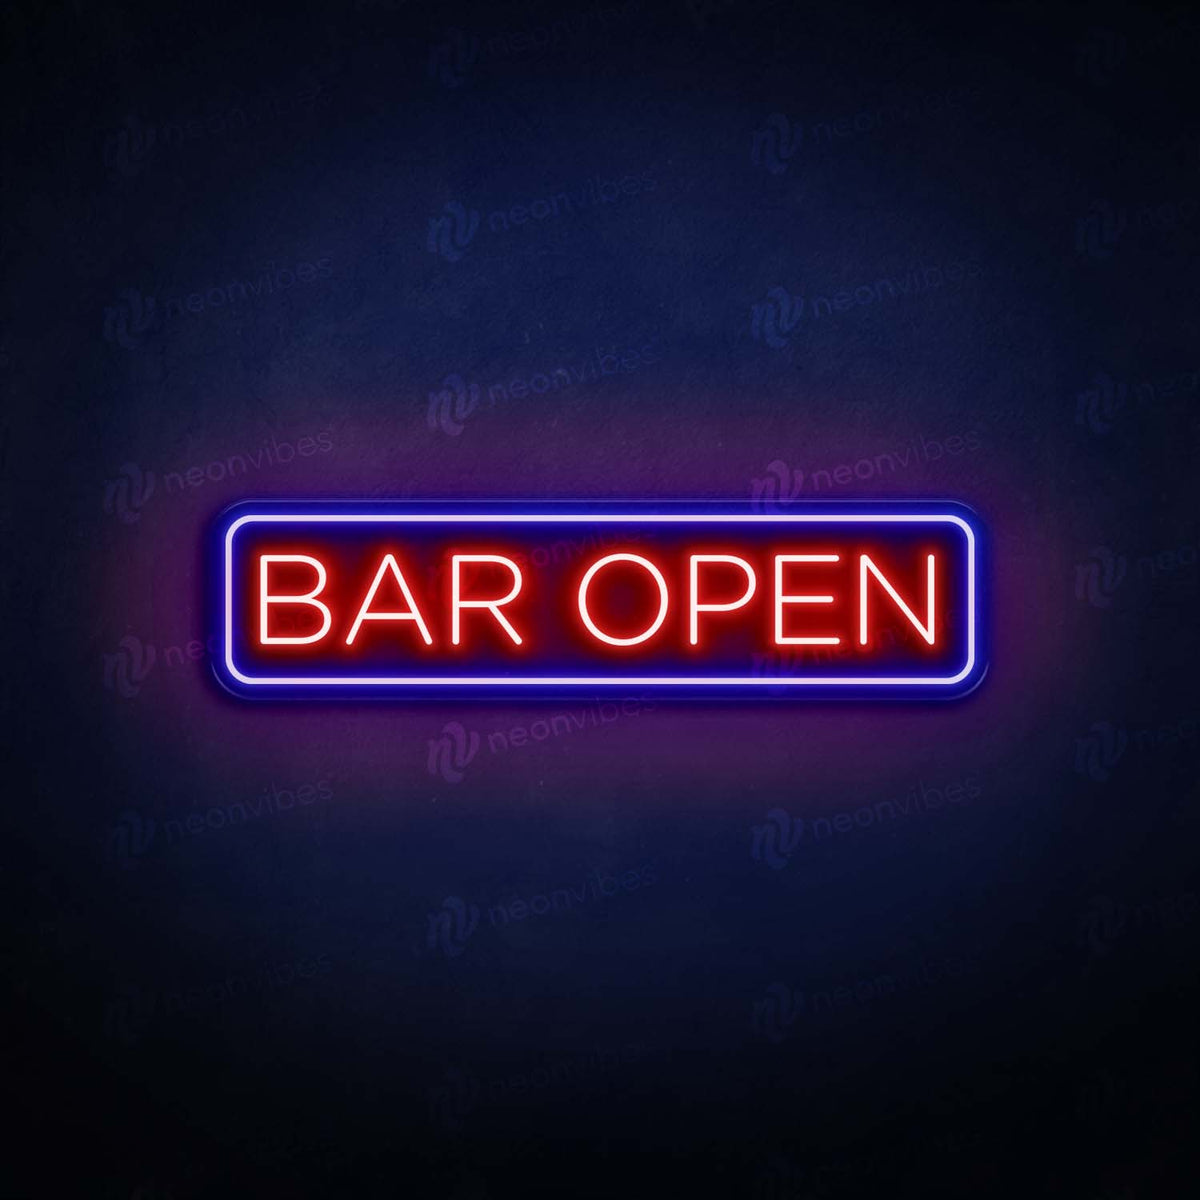 Bar Open V2 neon sign